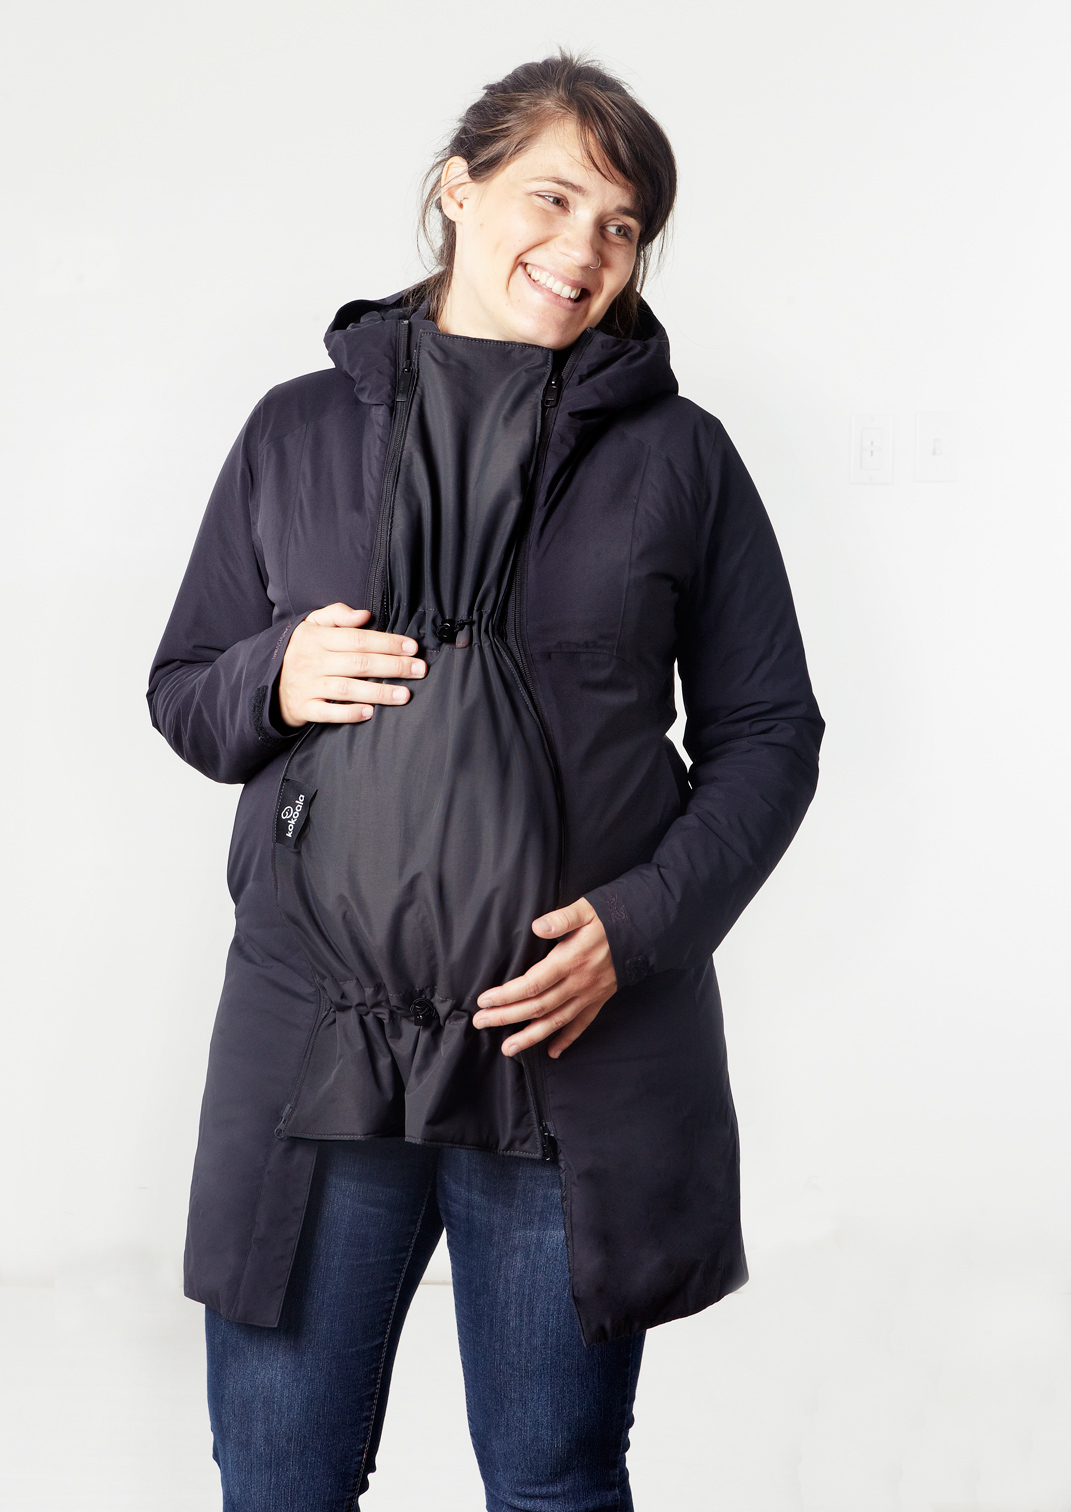 Pour la grossesse et le portage: les extensions de manteau Kokoala - La  Looma, le Blogue